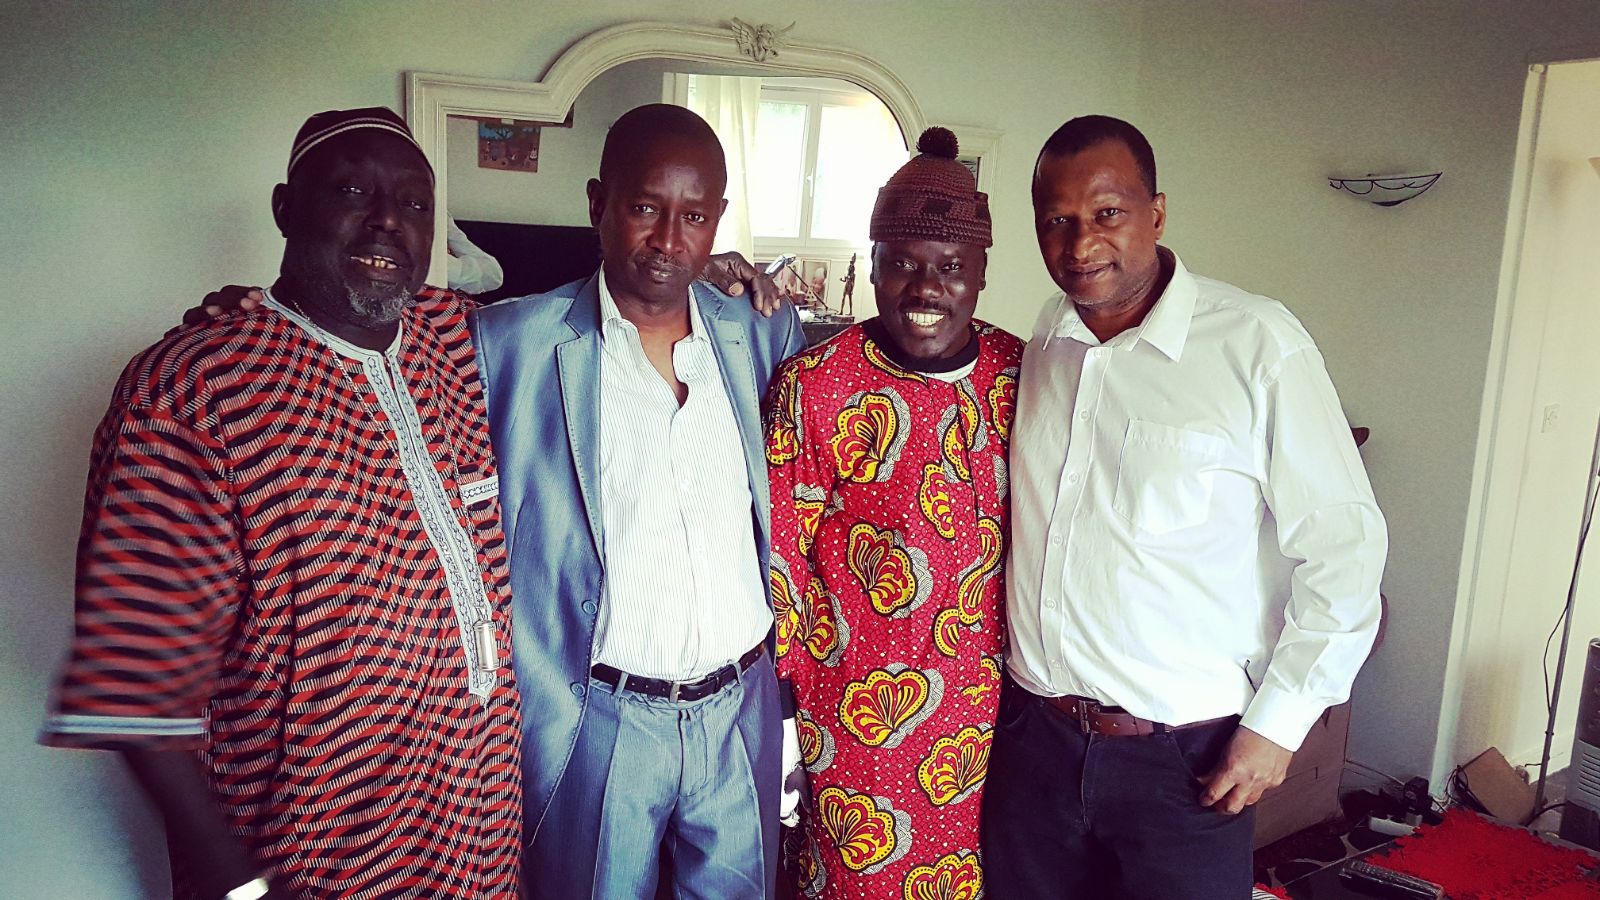 Les comédiens Diop Fall (Jiixi Jaaxa) et sa bande à Paris pour tourner une série  